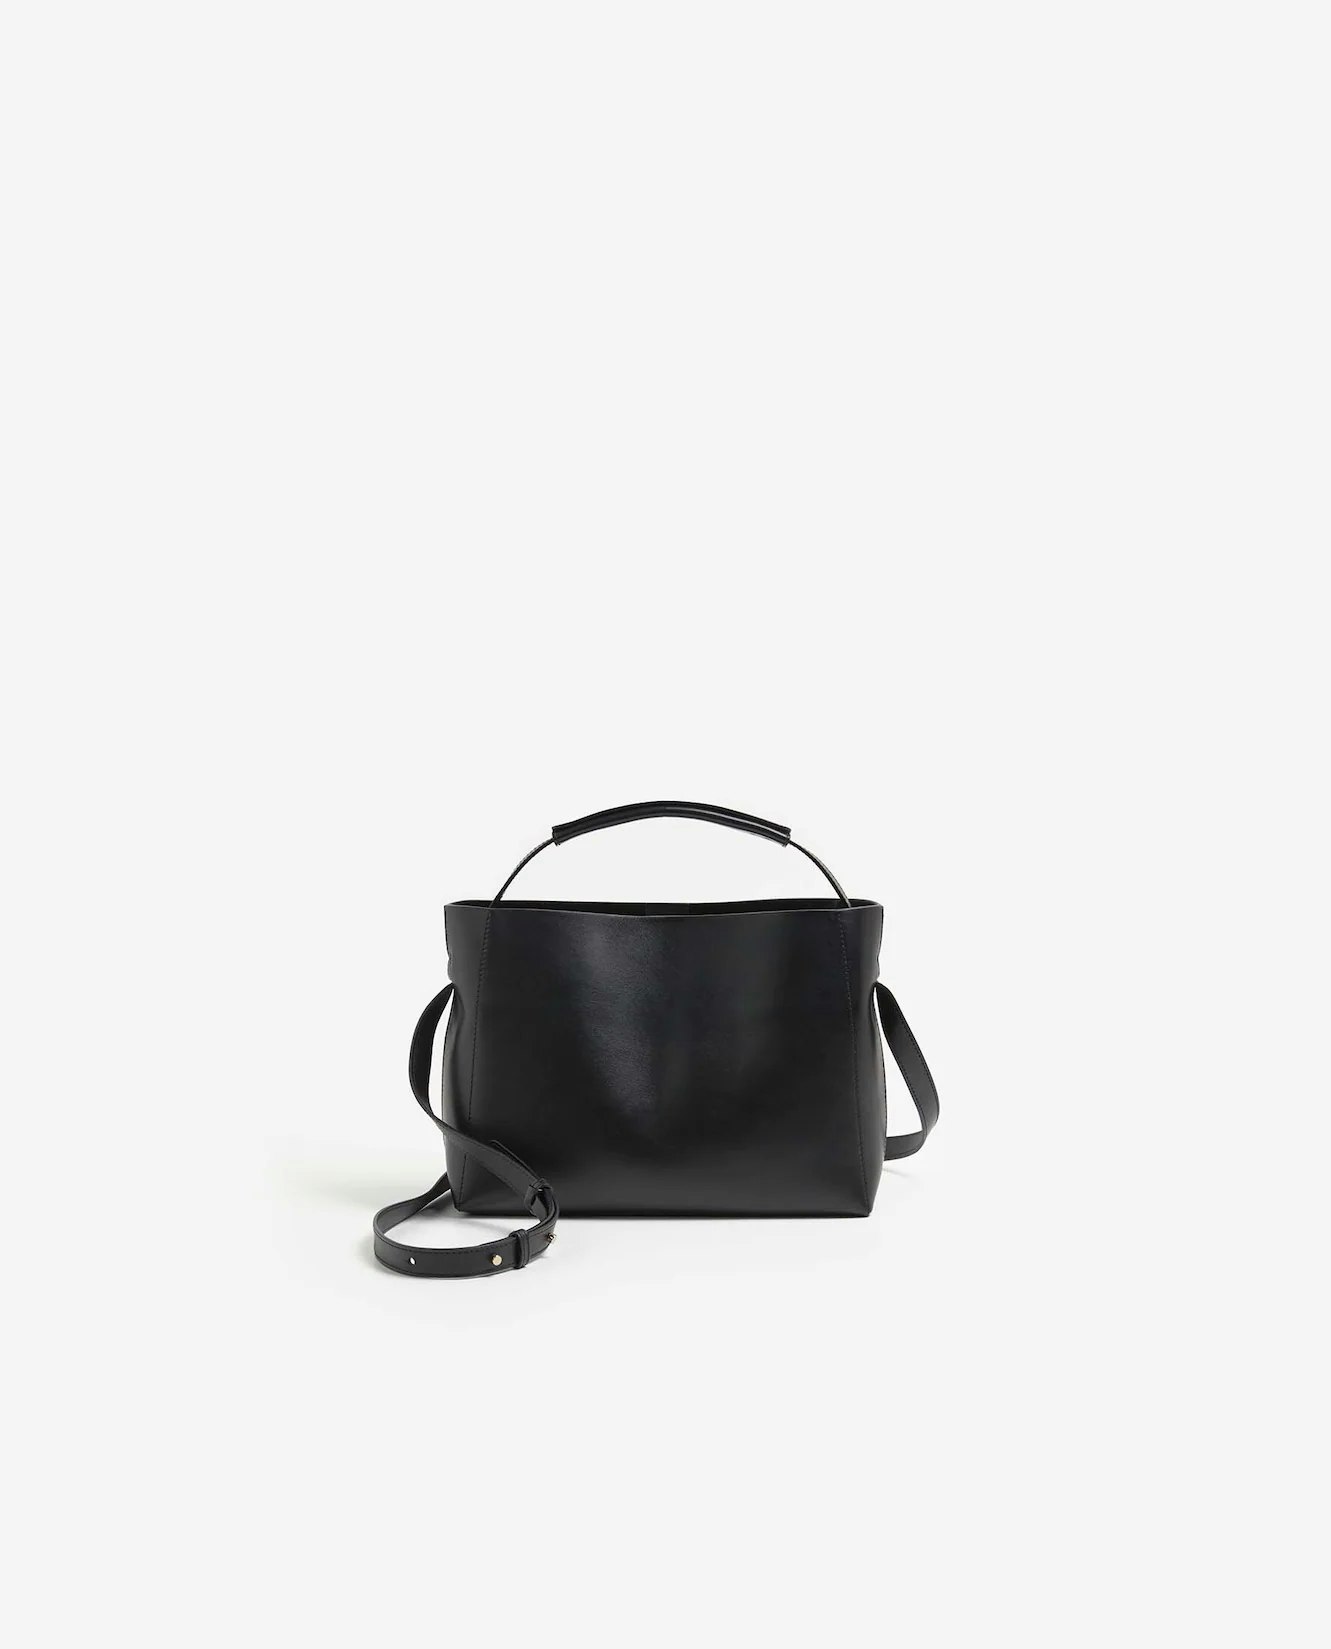 Hedda Mini Handbag Black Leather Flattered